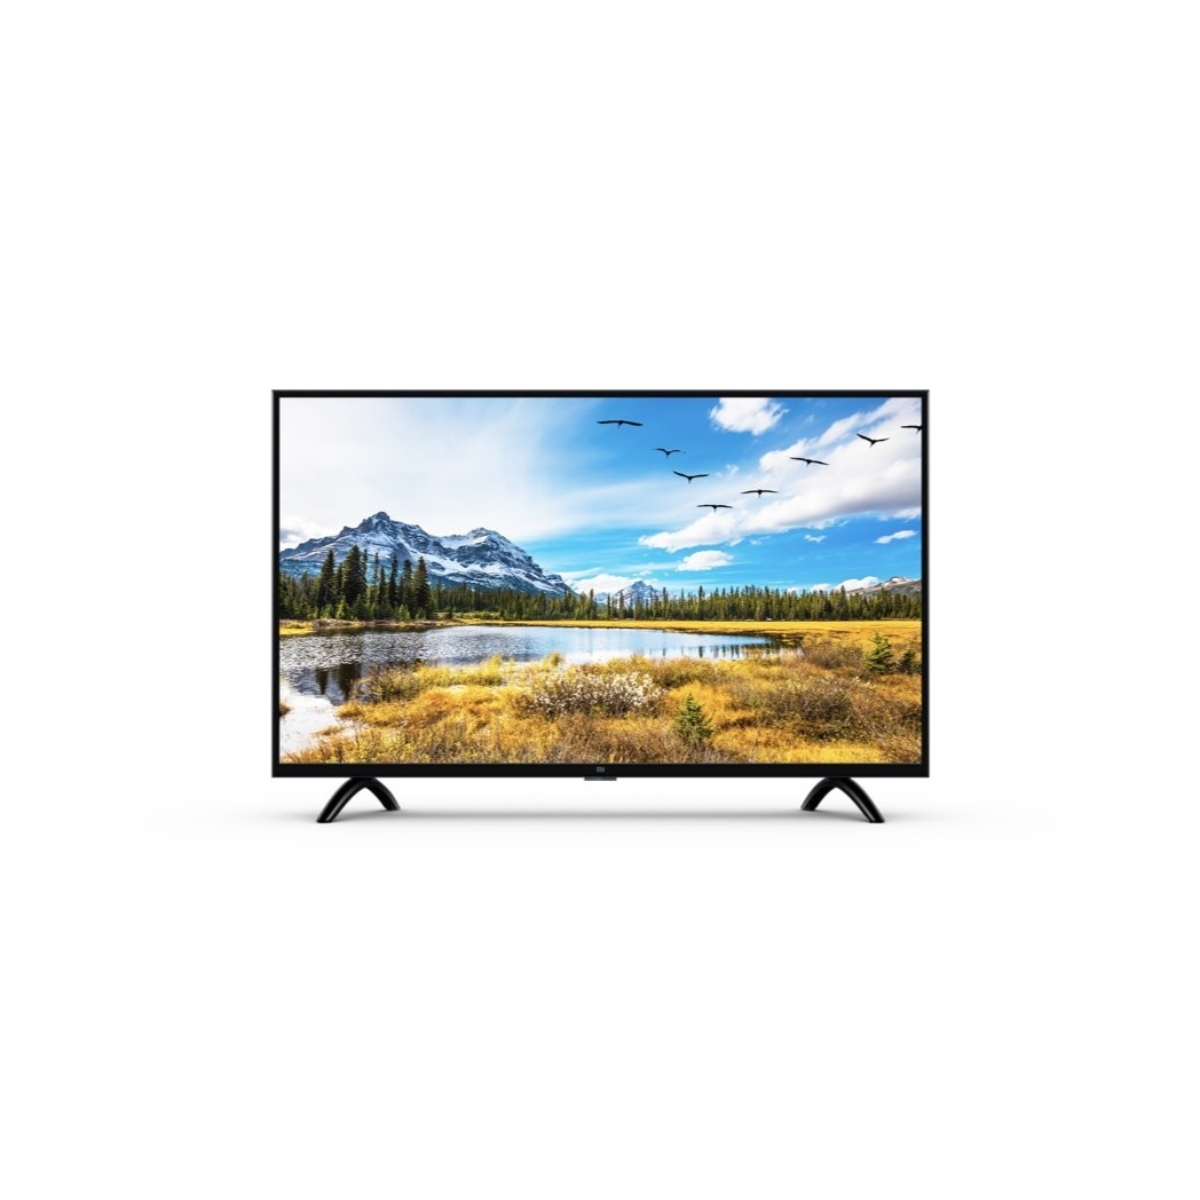 LED Smart TV  60 cm (24 inch) HD